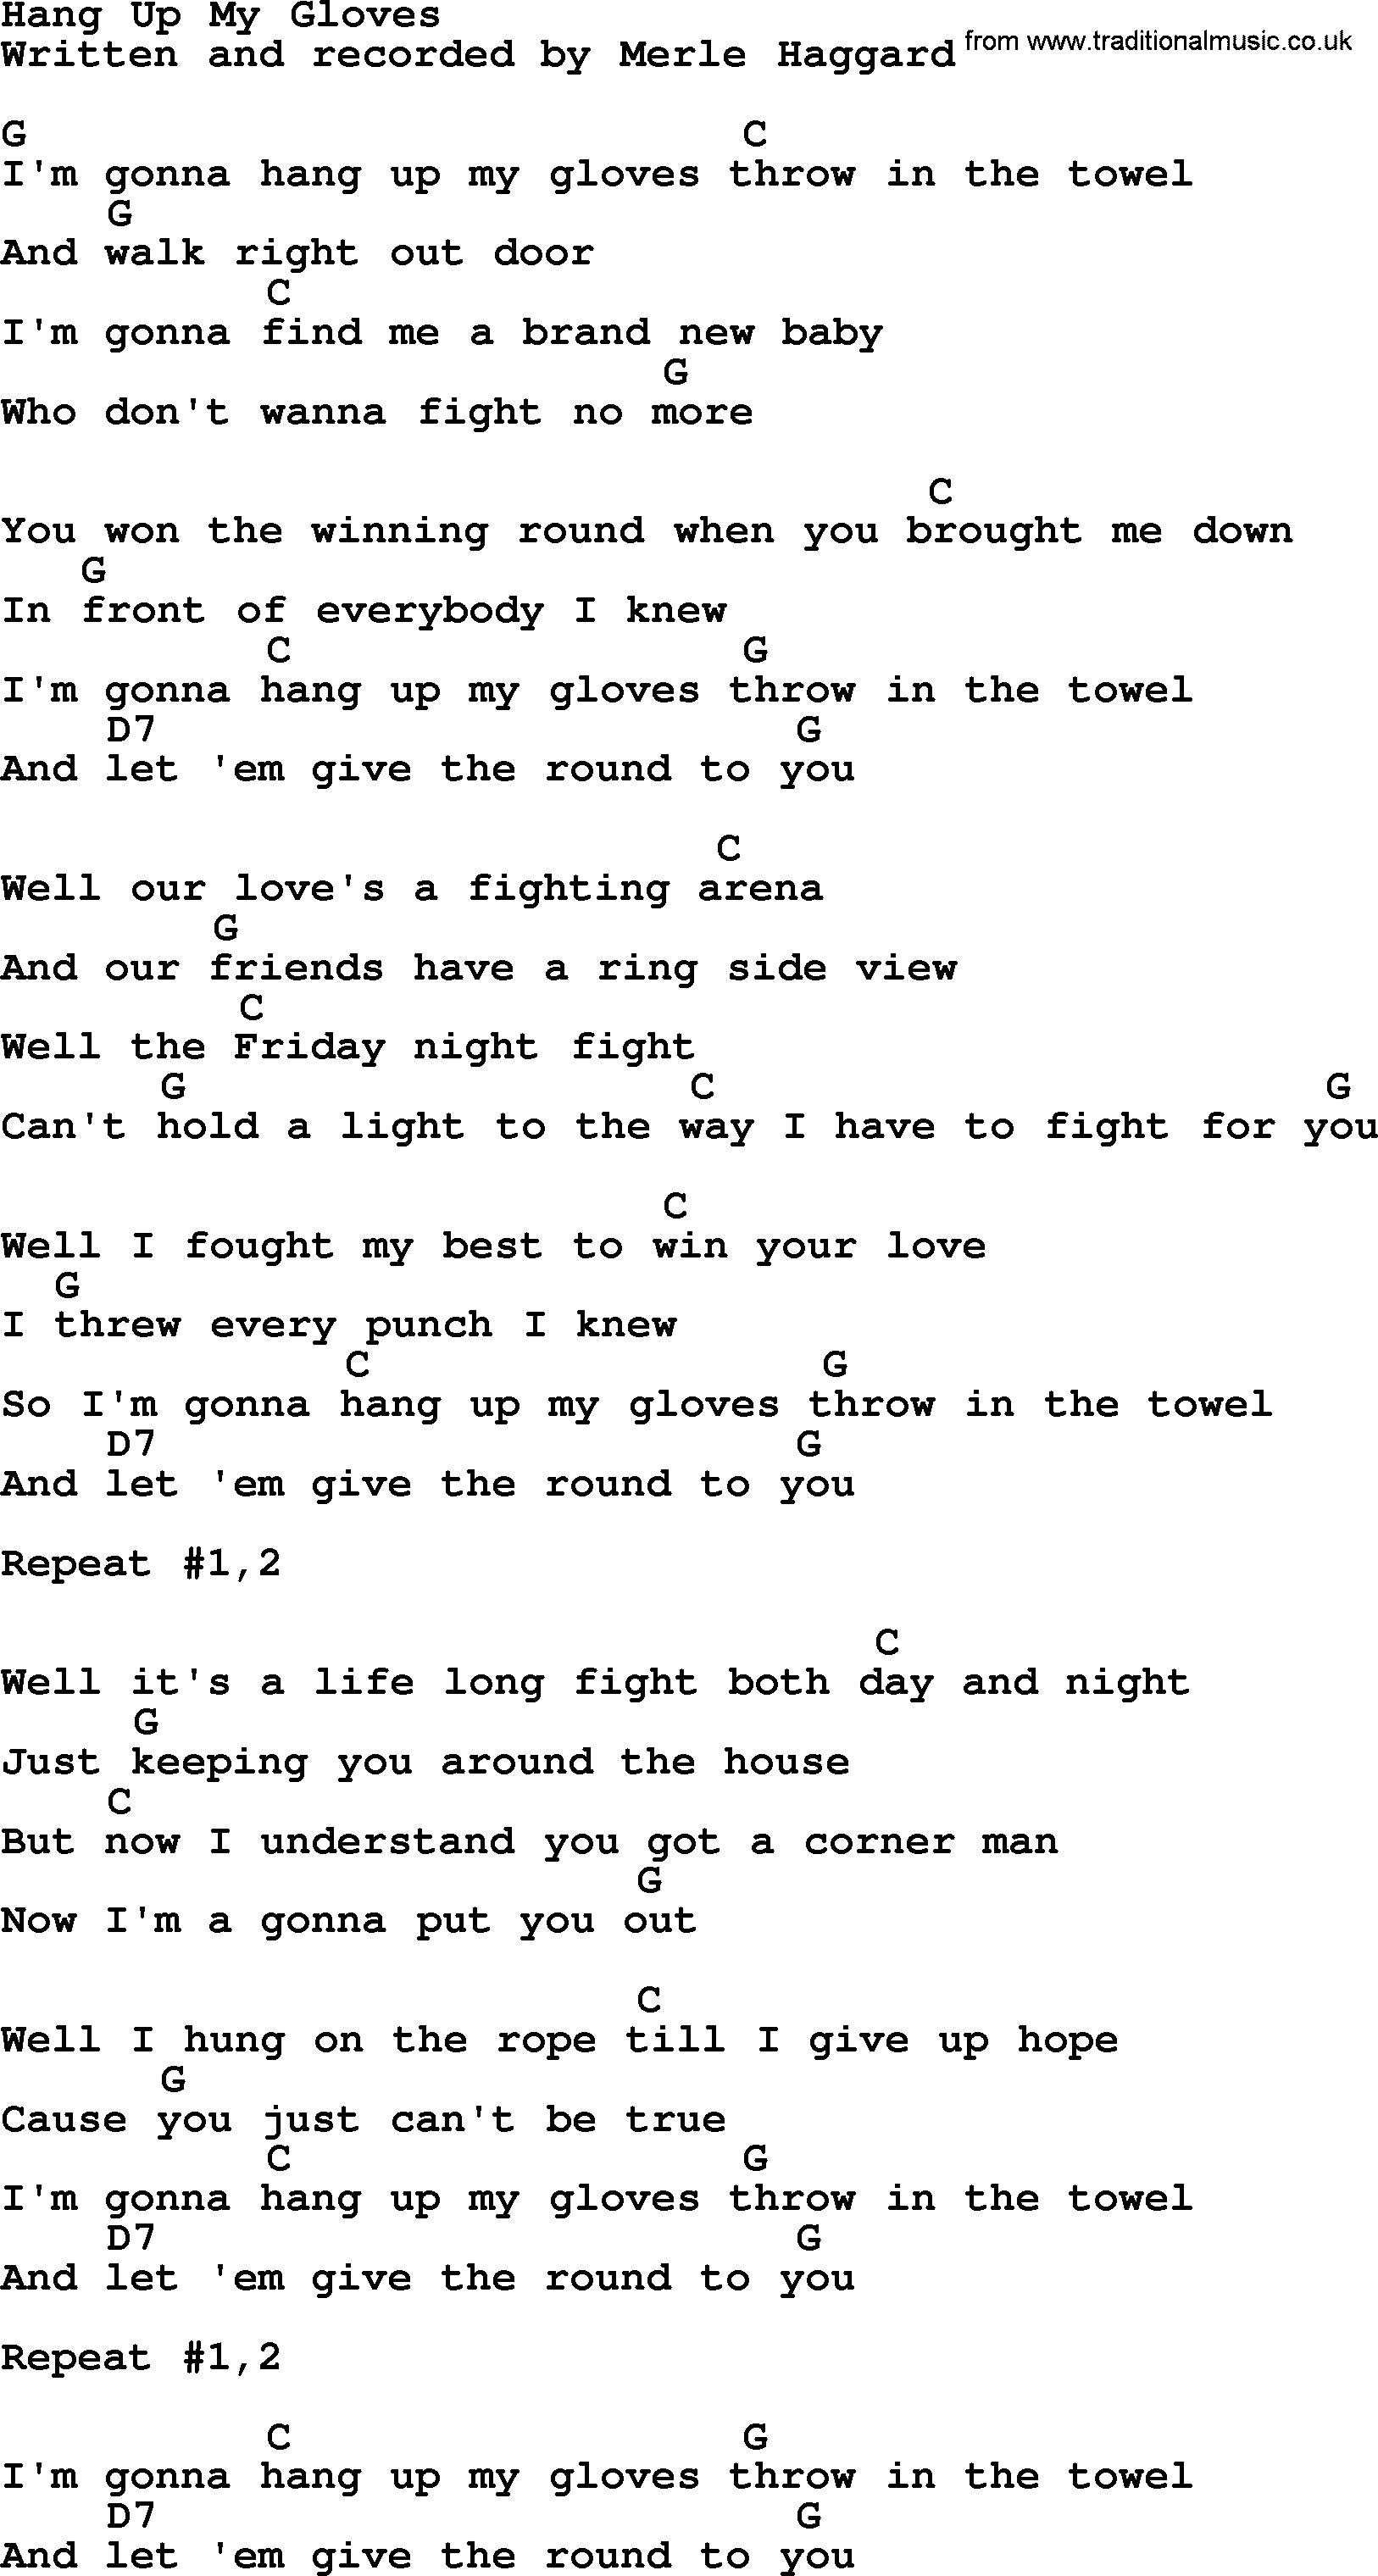 Merle Haggard song: Hang Up My Gloves, lyrics and chords